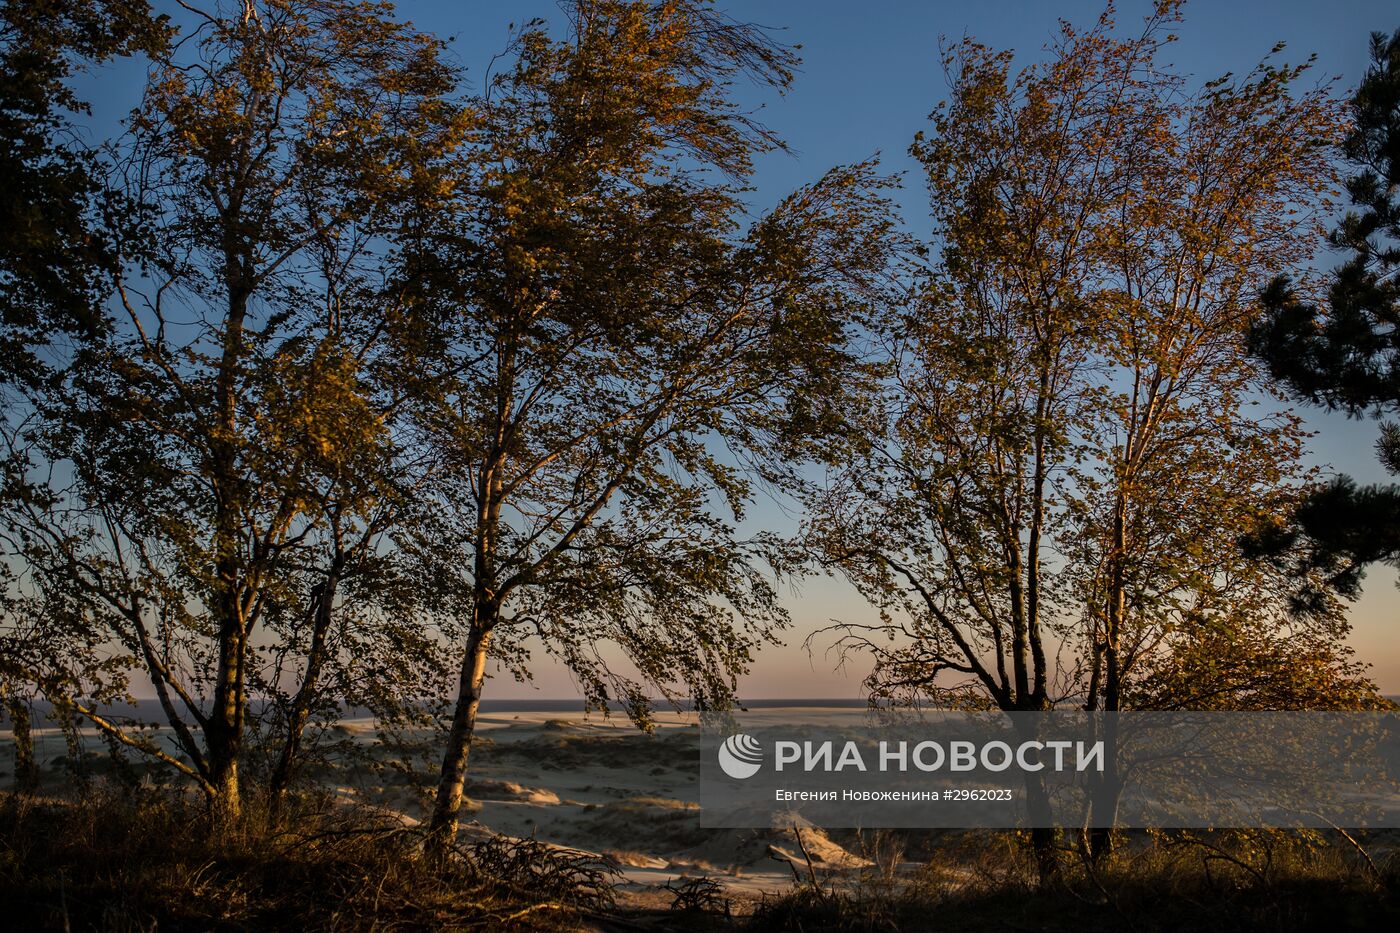 Национальный парк "Куршская коса" в Калининградской области